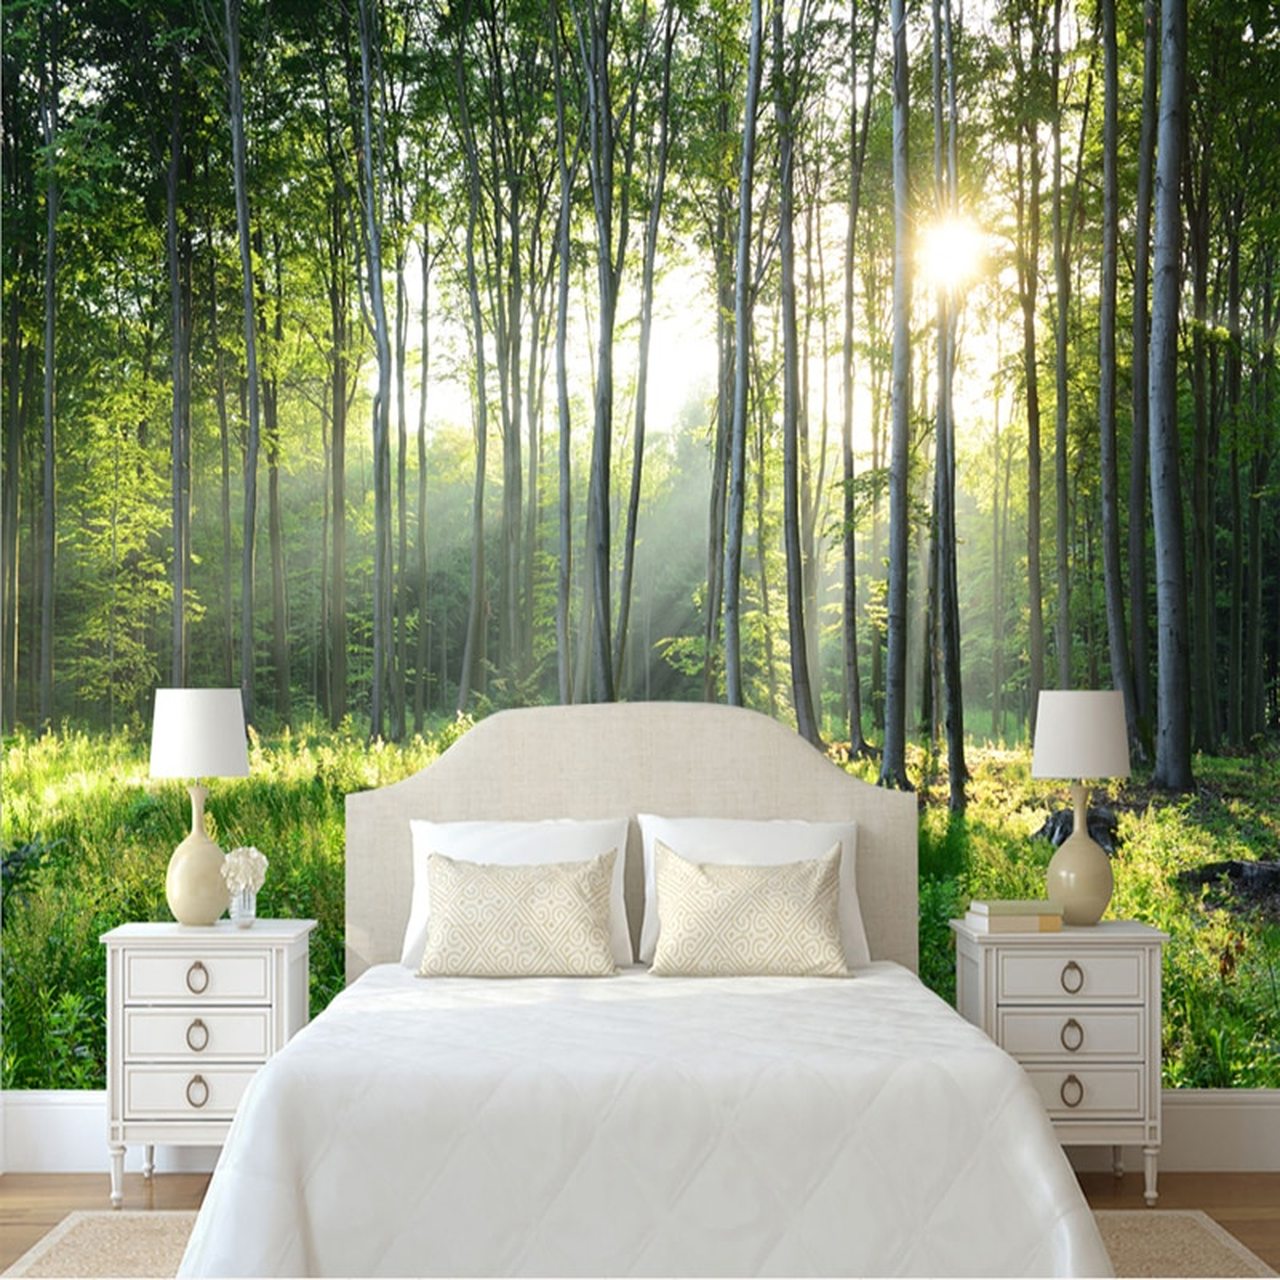 papier peint chambre verte,la nature,chambre,meubles,lit,arbre